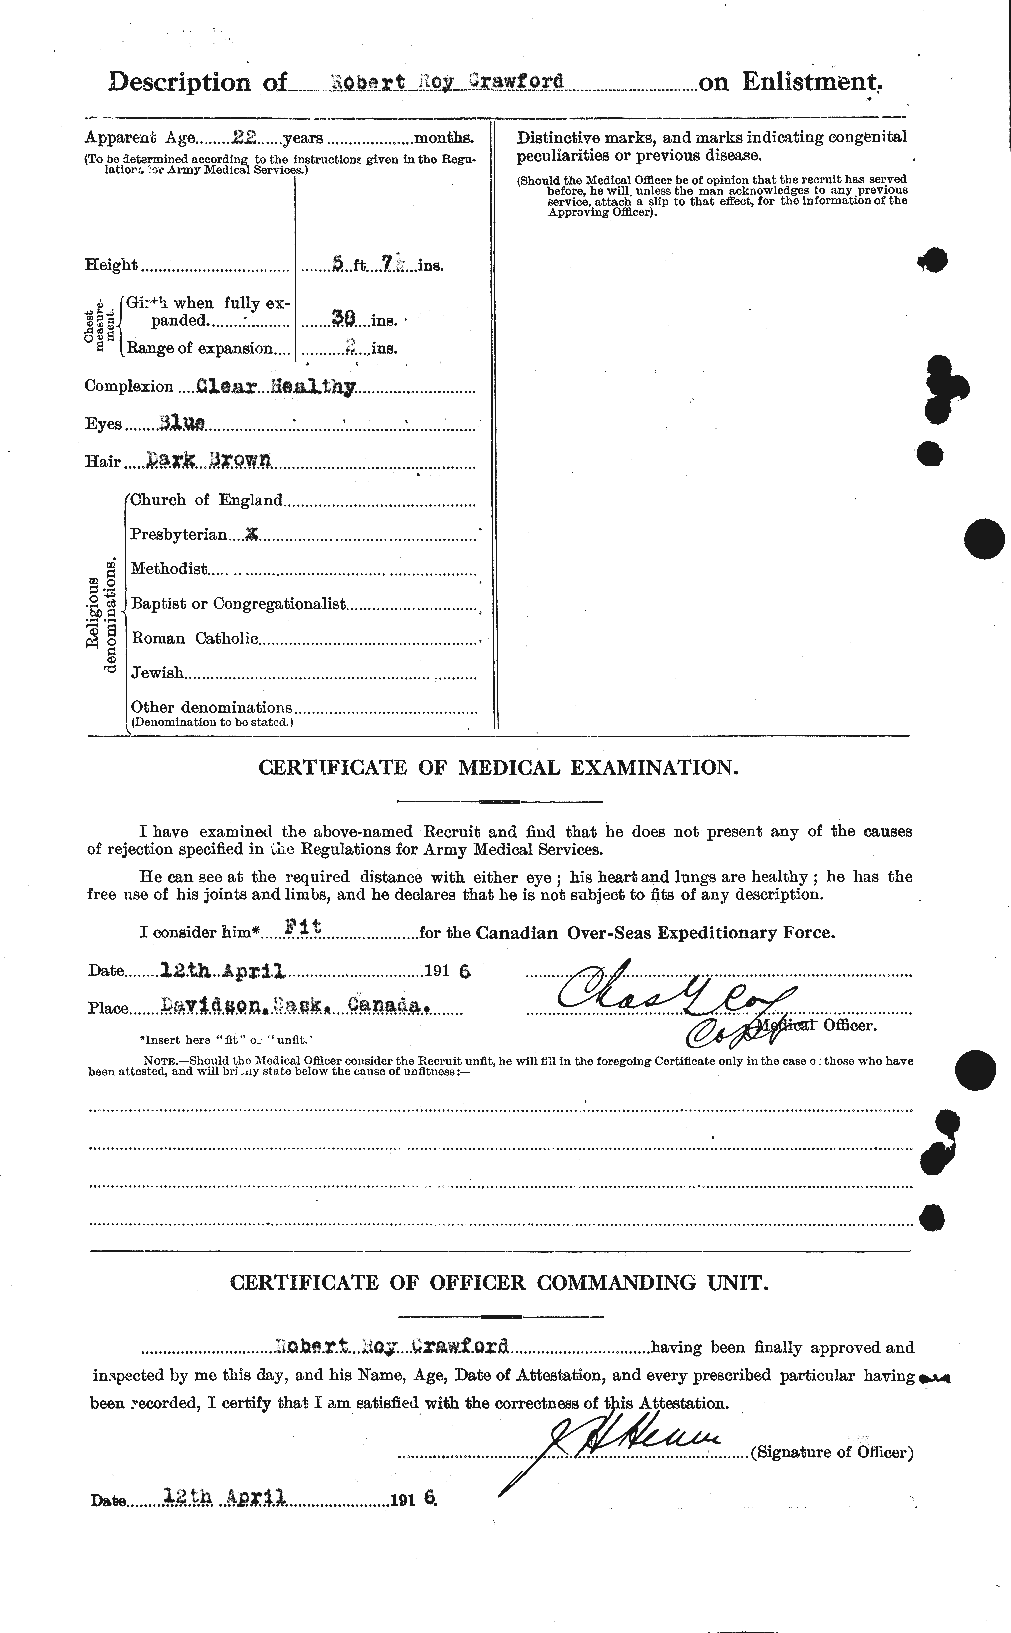 Dossiers du Personnel de la Première Guerre mondiale - CEC 061395b